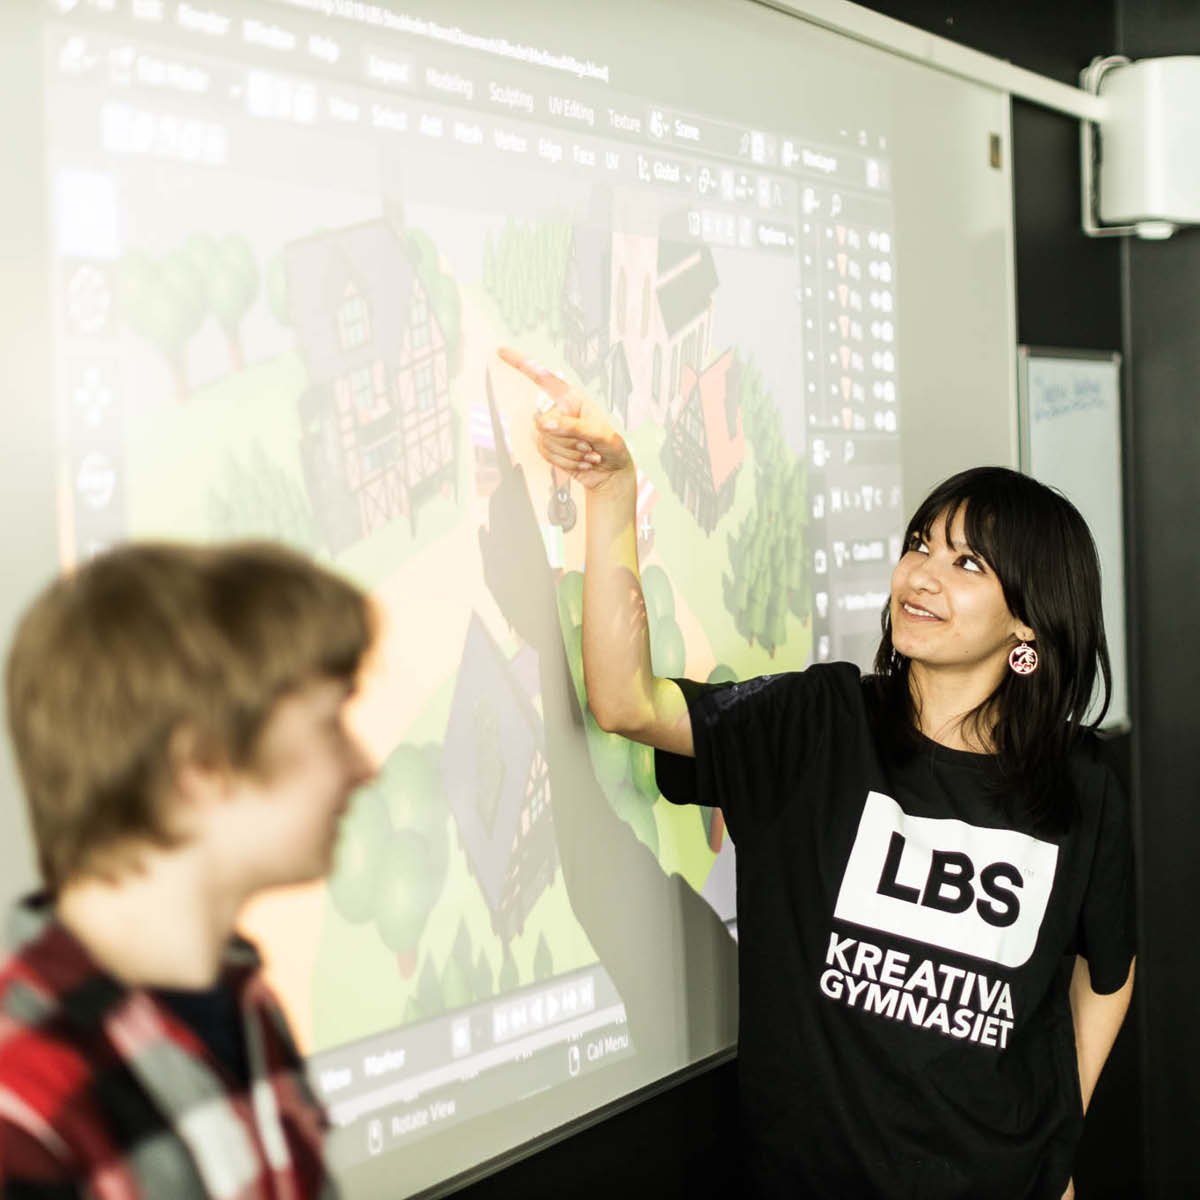 Elever presenterar deras arbete inför klassen på storbildskärm.